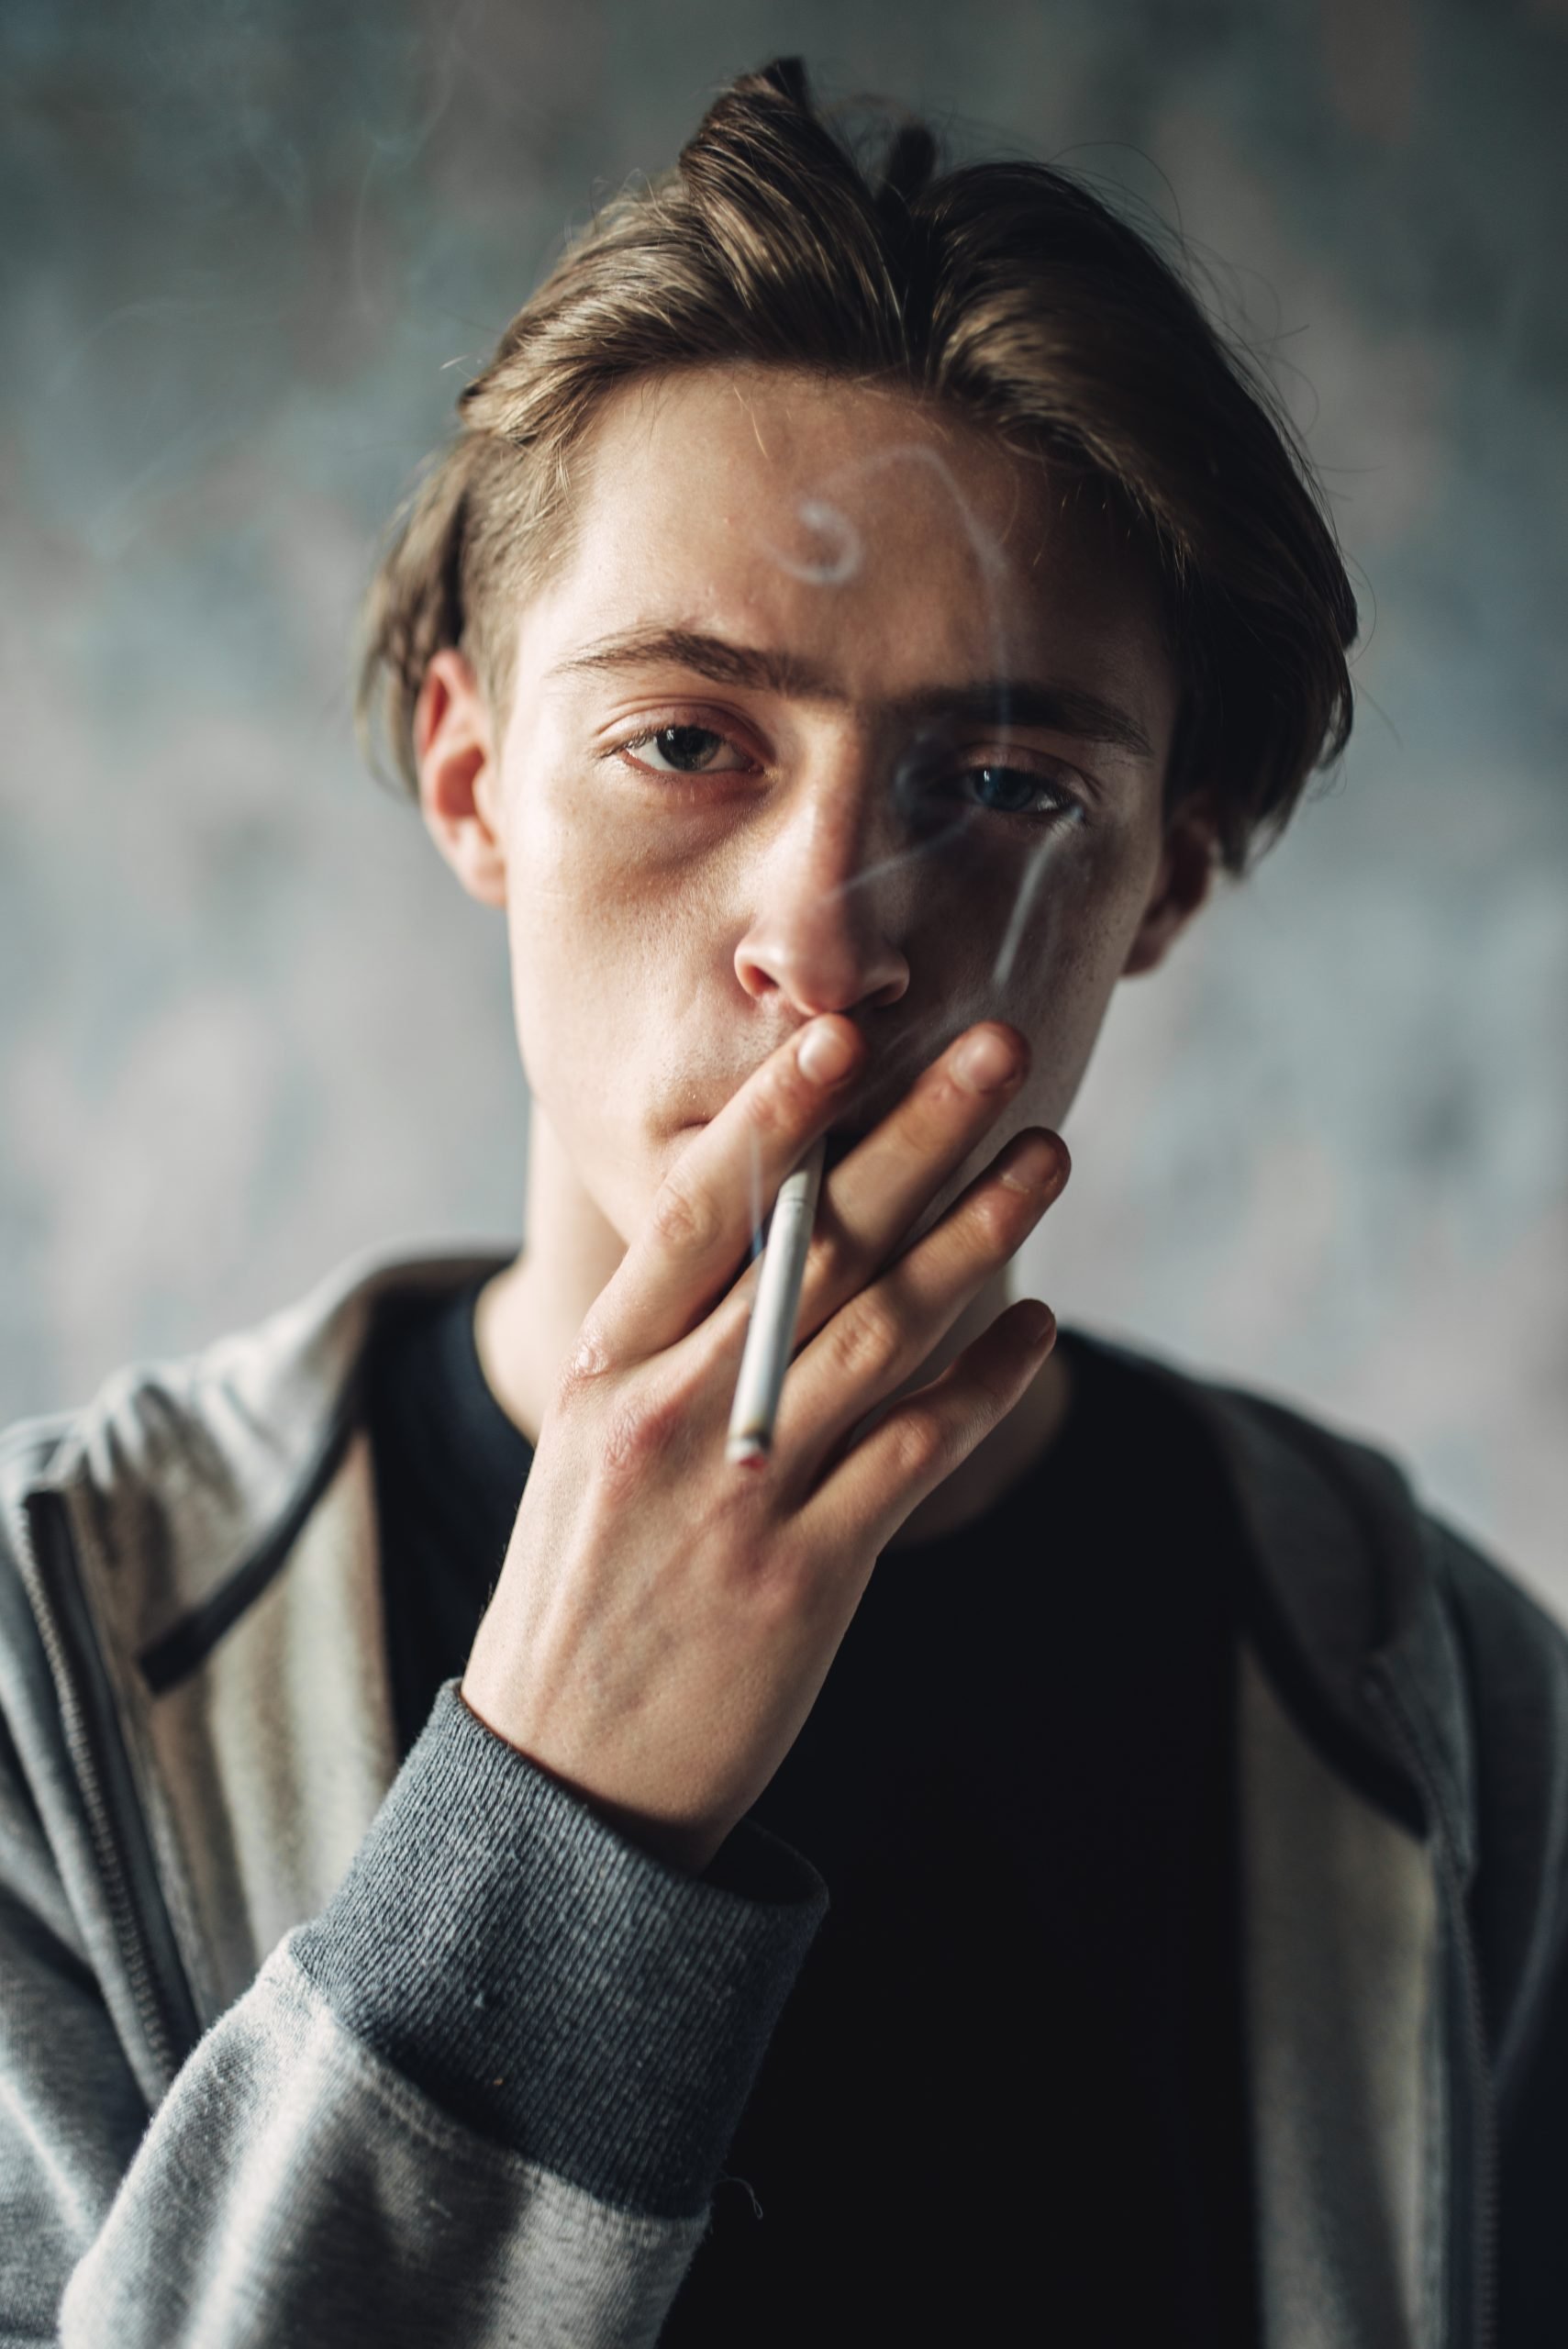 Does Smoking (Nicotine) Cause Hair Loss? 2020